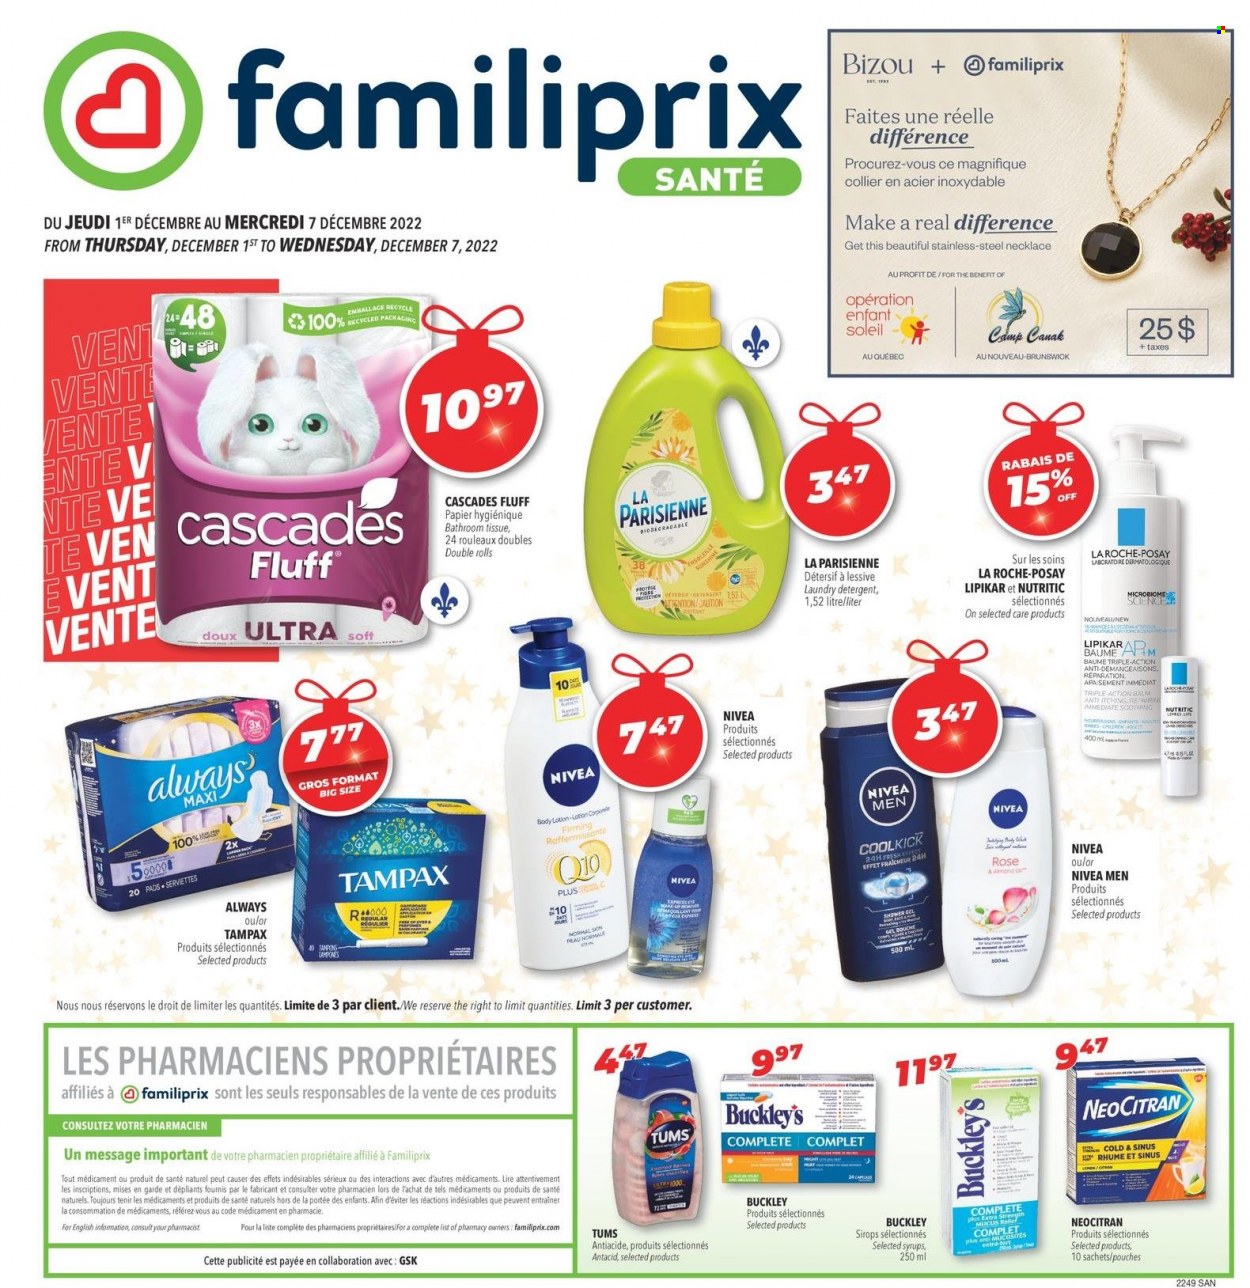 Familiprix Santé flyer  - December 01, 2022 - December 07, 2022.